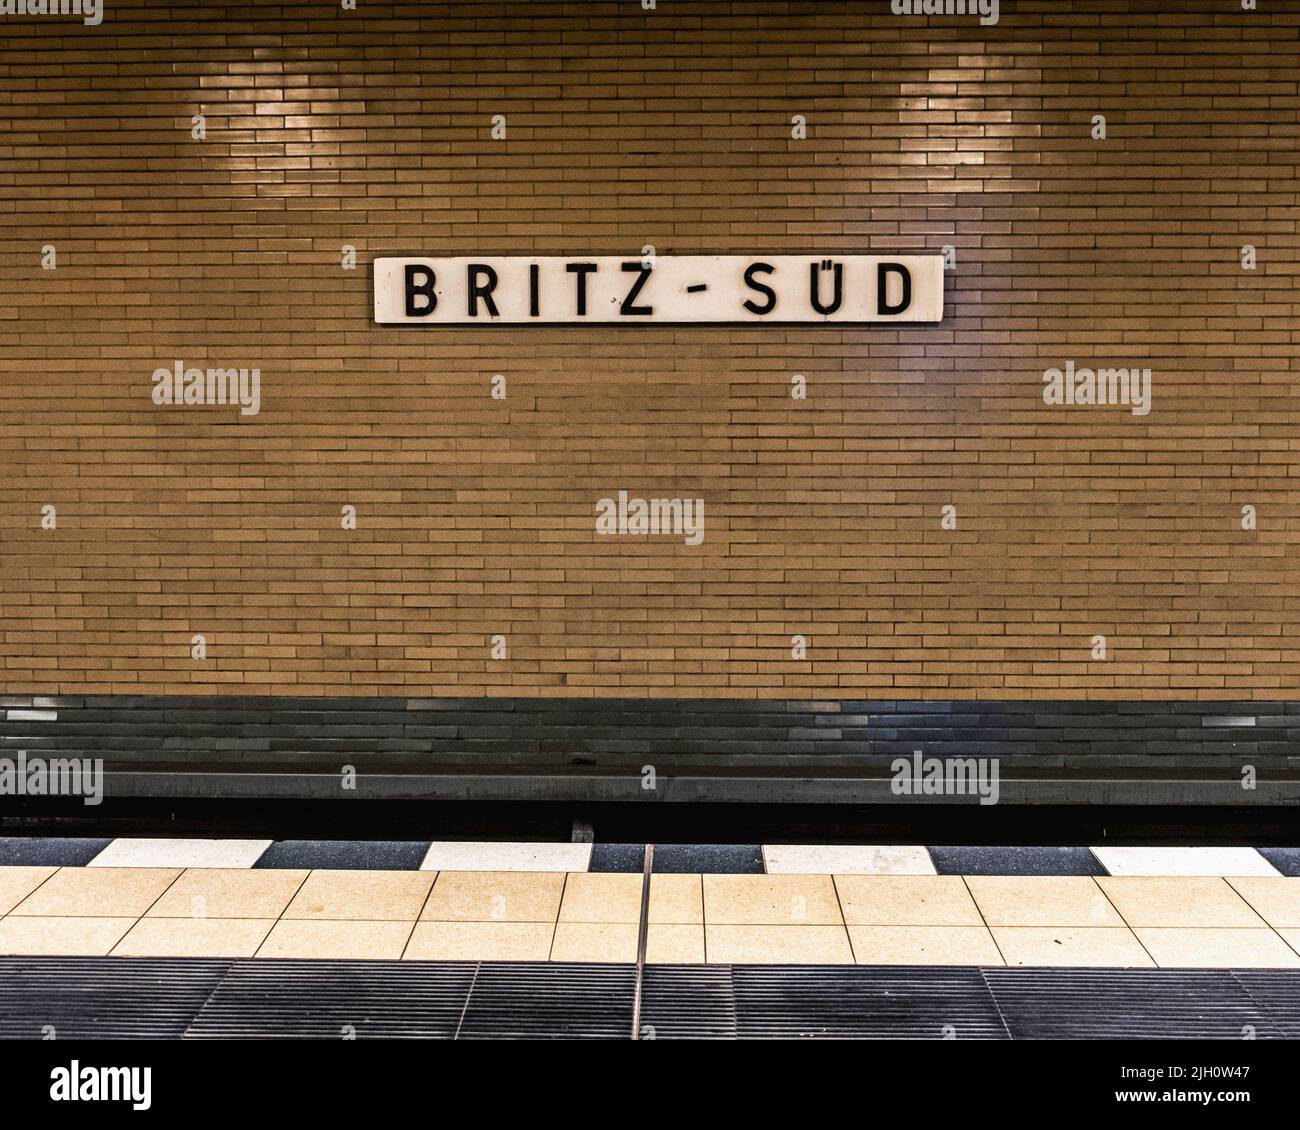 La stazione metropolitana Britz-Süd serve la linea metropolitana U7, aperta il 28 settembre 1963, Britz, Neukolln, Berlino, Germania Foto Stock